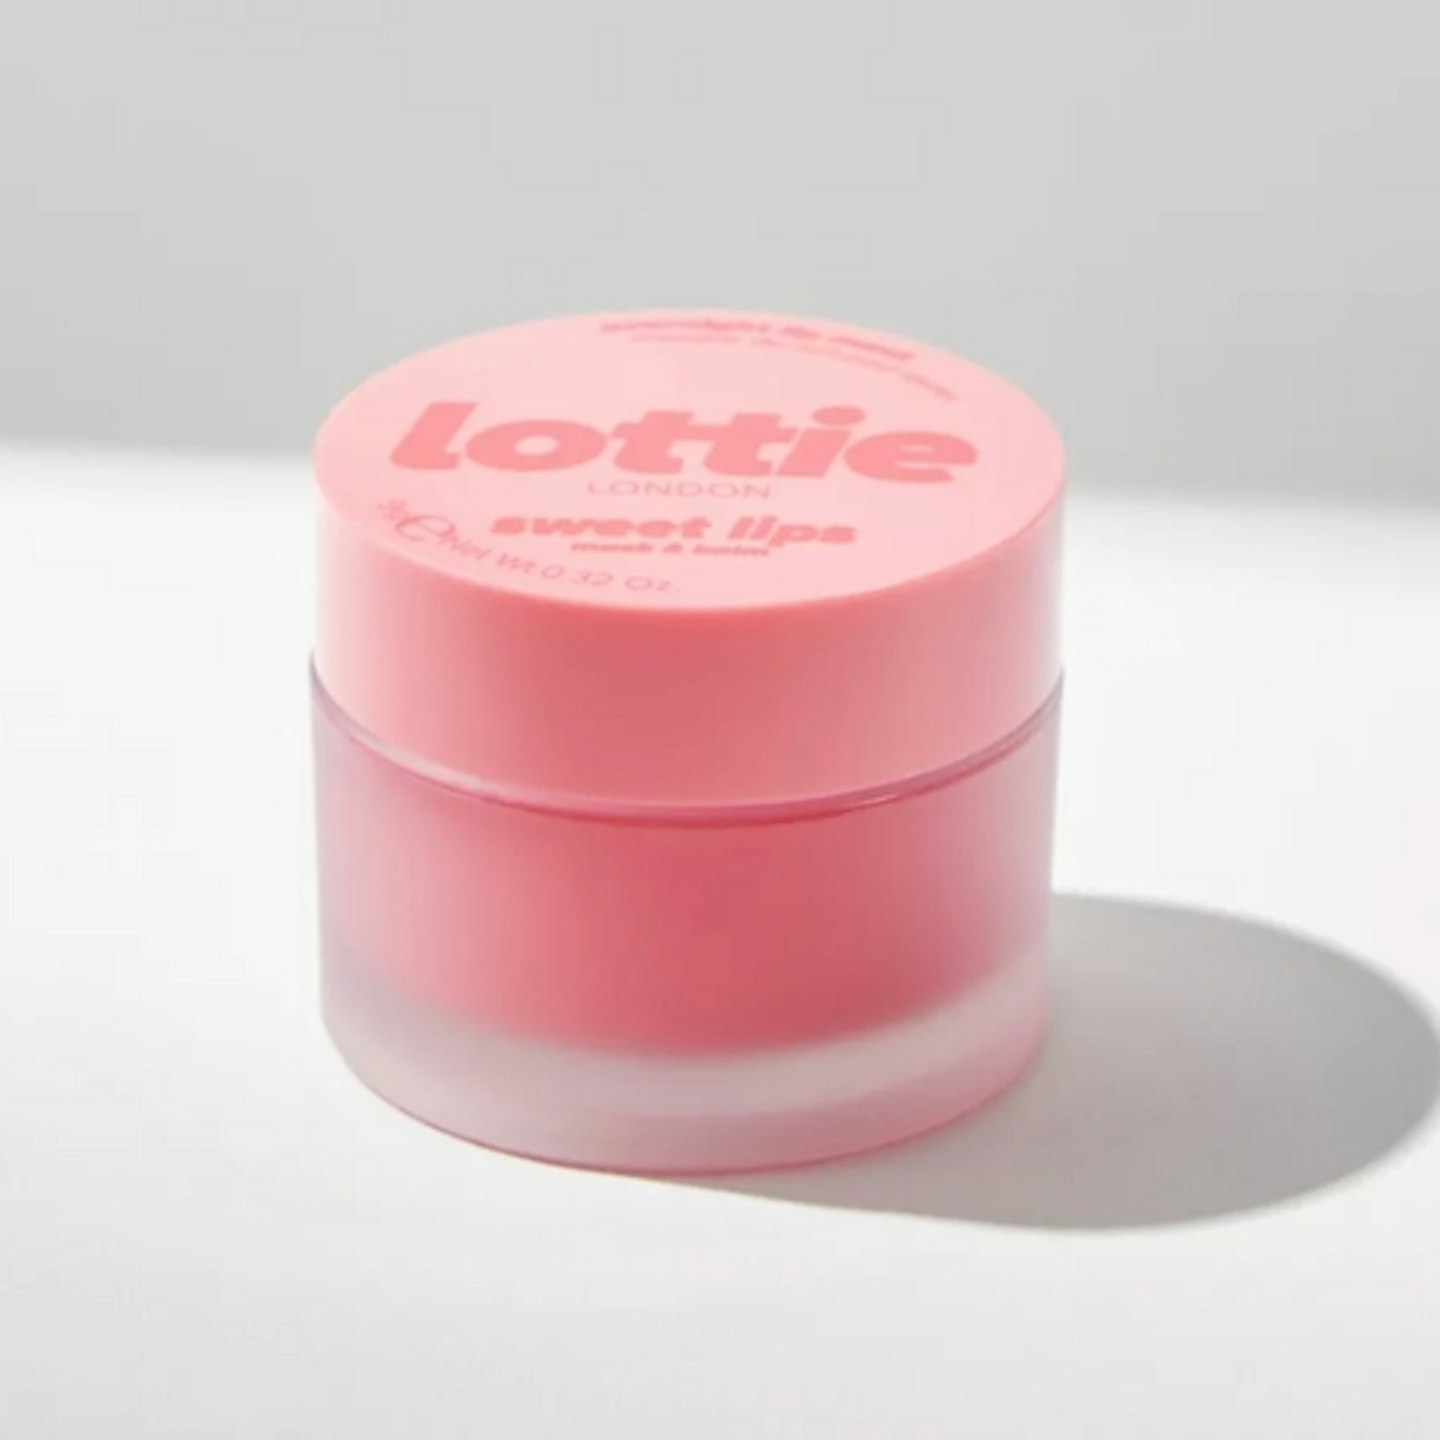 Lottie.London Sweet Lips Overnight Lip Mask & Balm